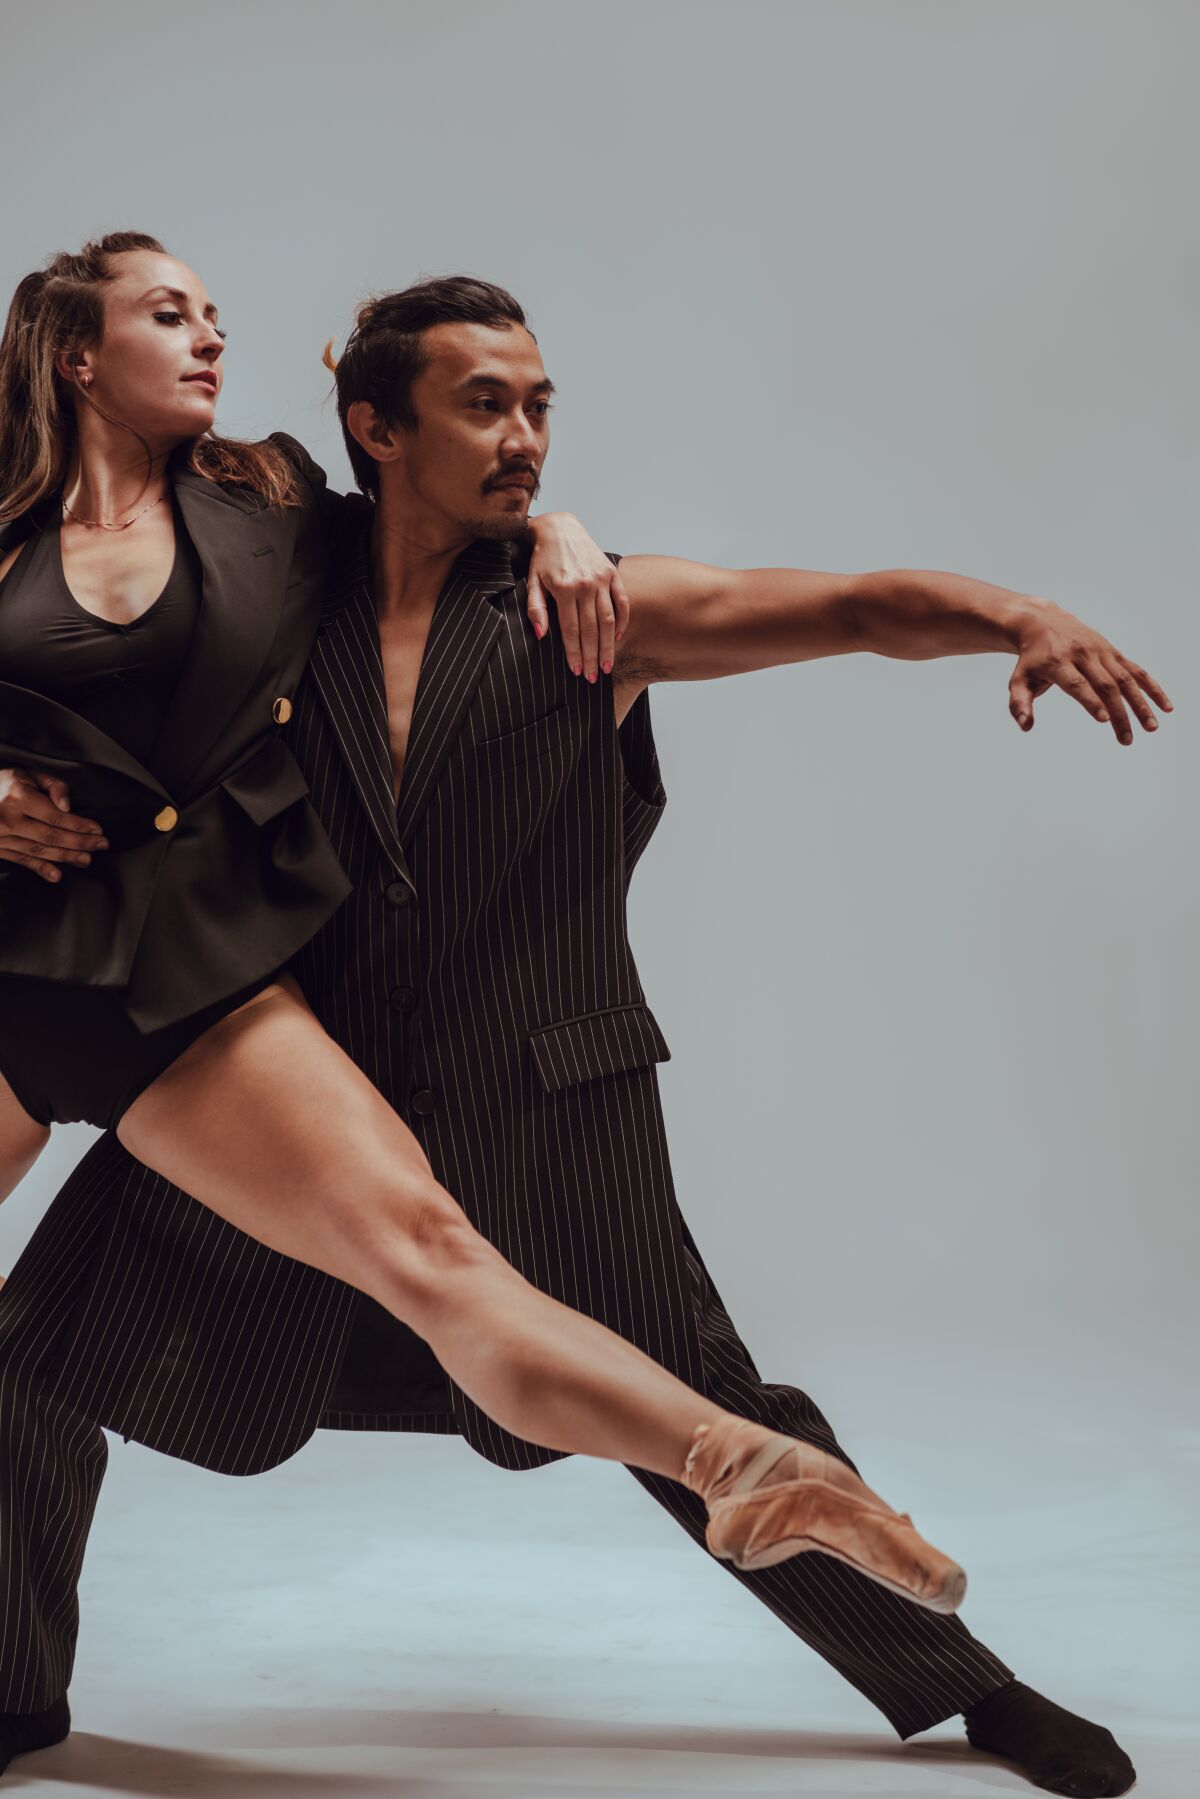 Κοιτάζοντας πίσω στον χορό το 2022: νέοι χώροι και νέες χορογραφίες αναζωογονούν